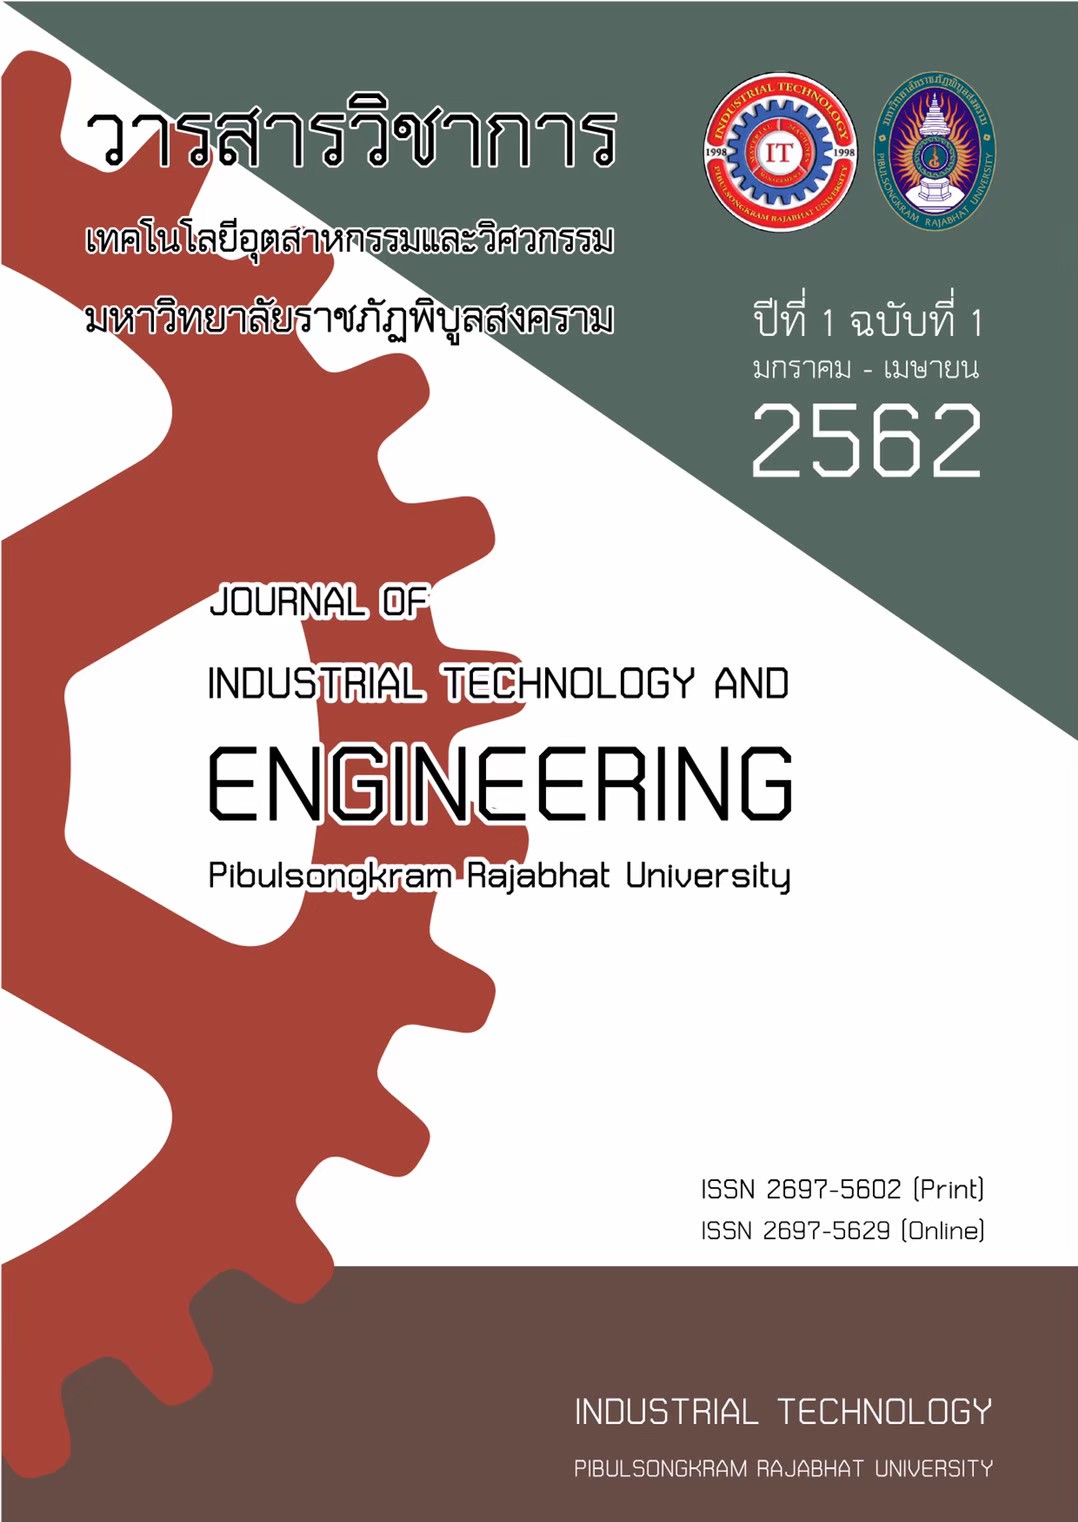 					ดู ปีที่ 1 ฉบับที่ 1 (2019): January 2019 - April 2019 (PSRU Journal of Industrial Technology and Engineering)
				